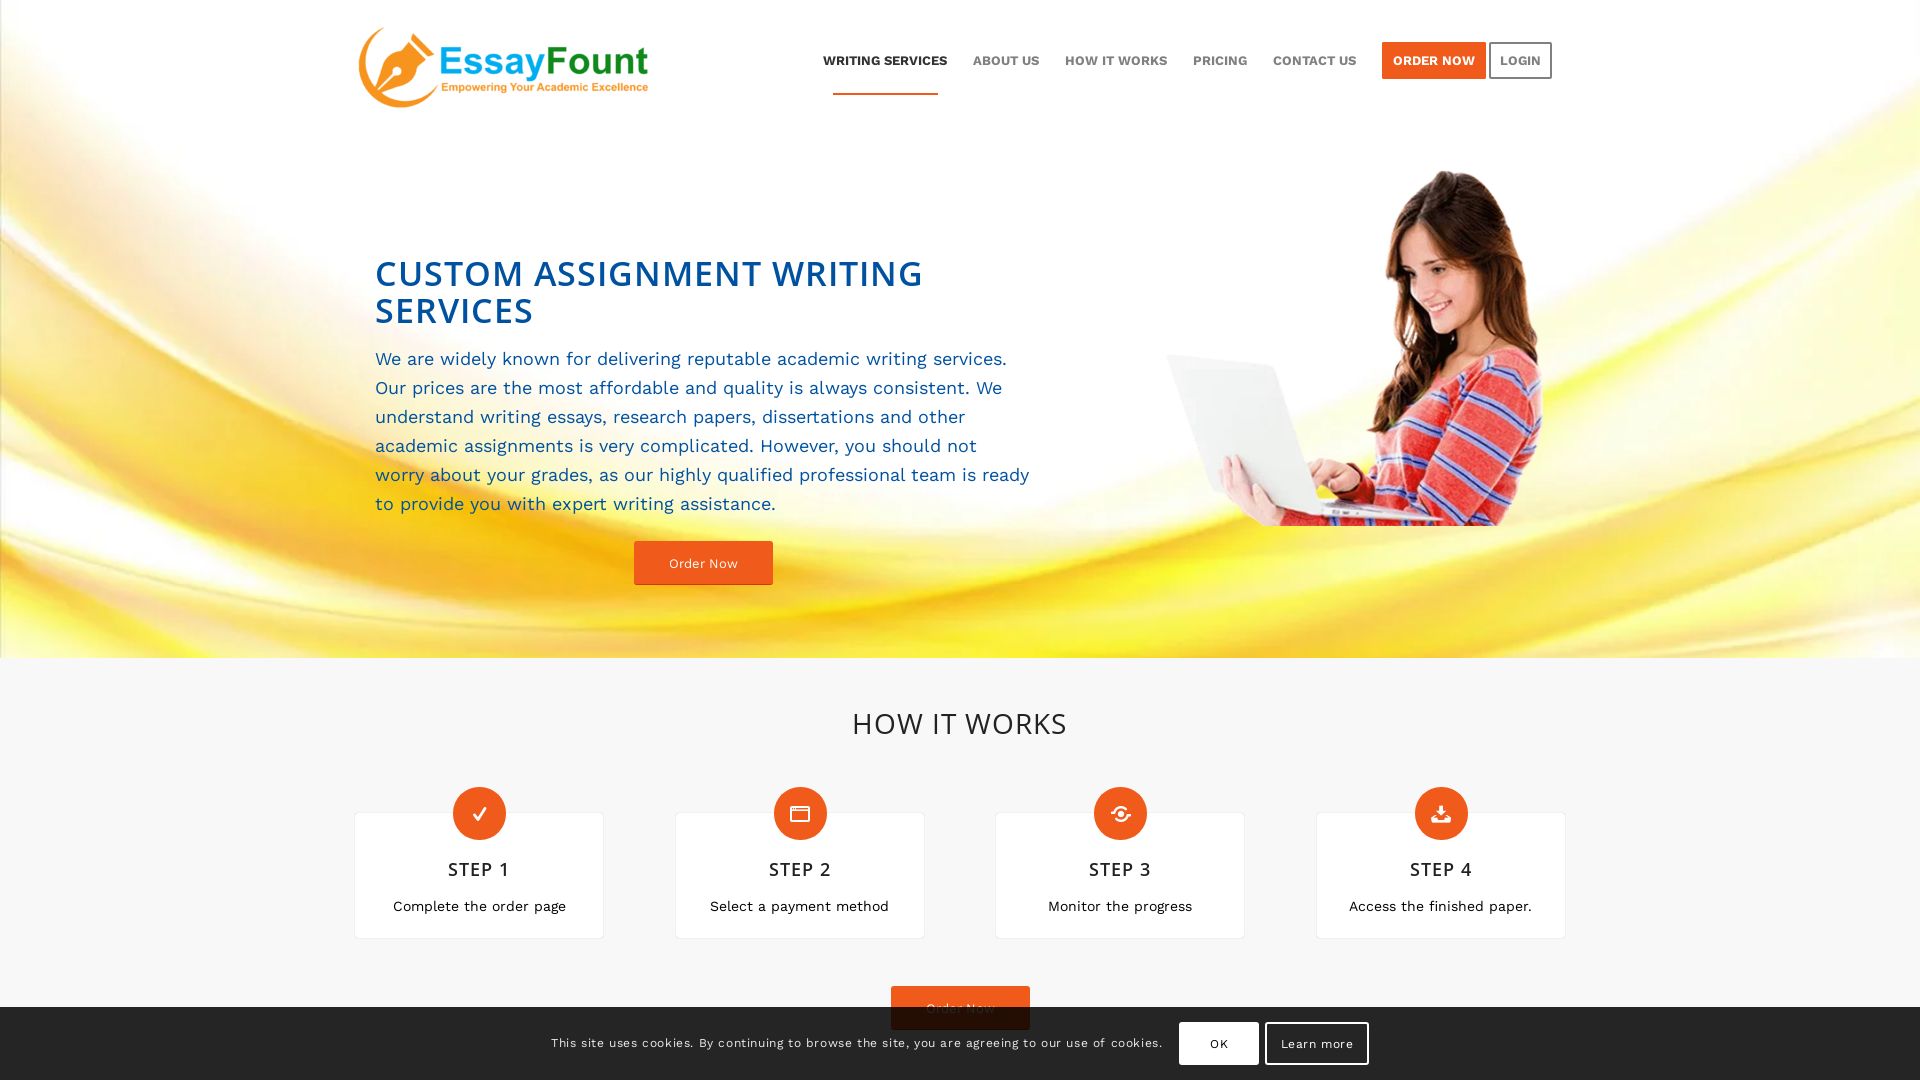 网站状态 essayfount.com 是  在线的